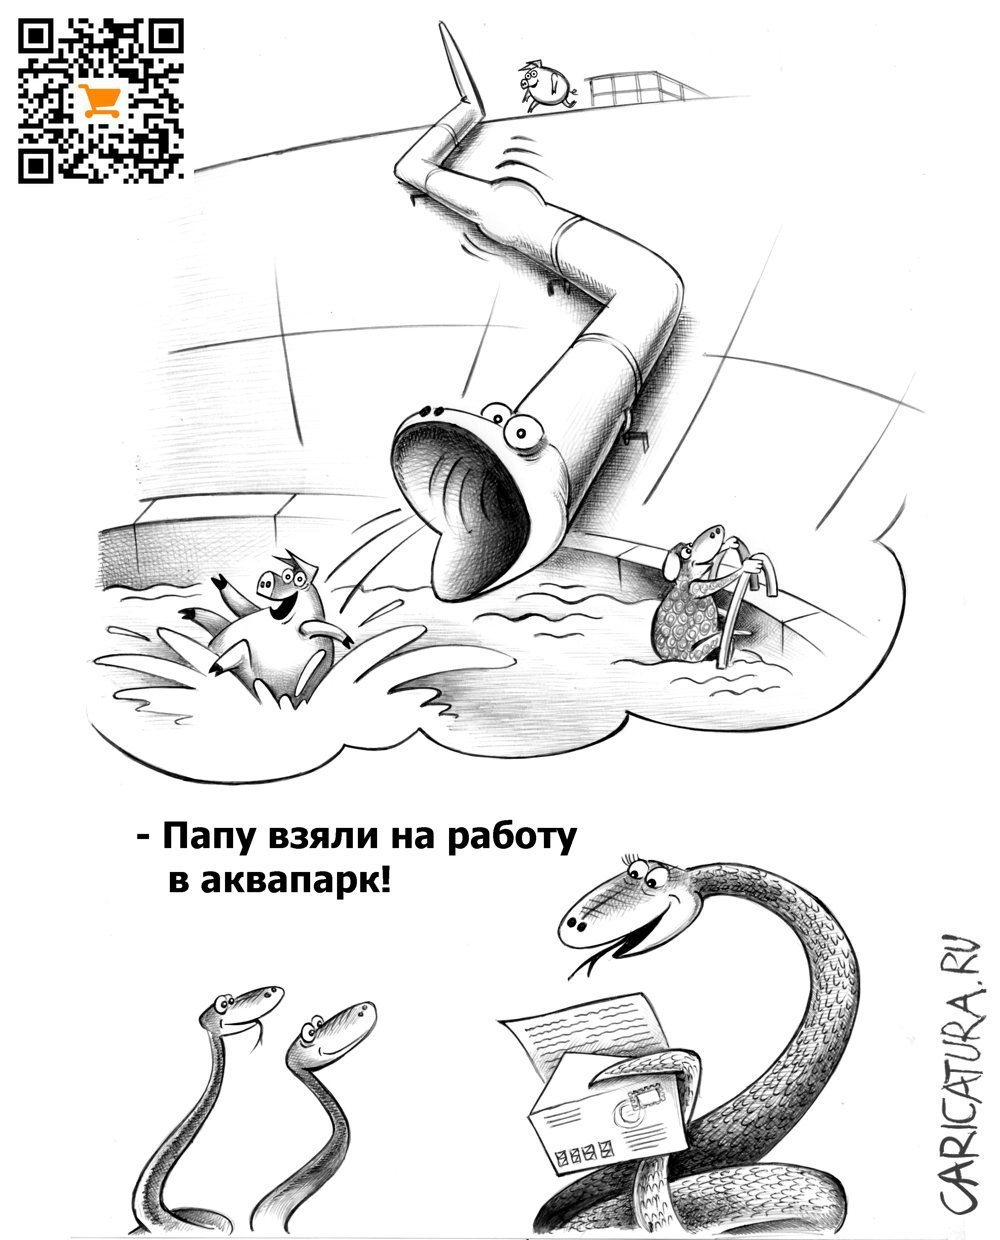 Карикатура "Аквапарк", Сергей Корсун